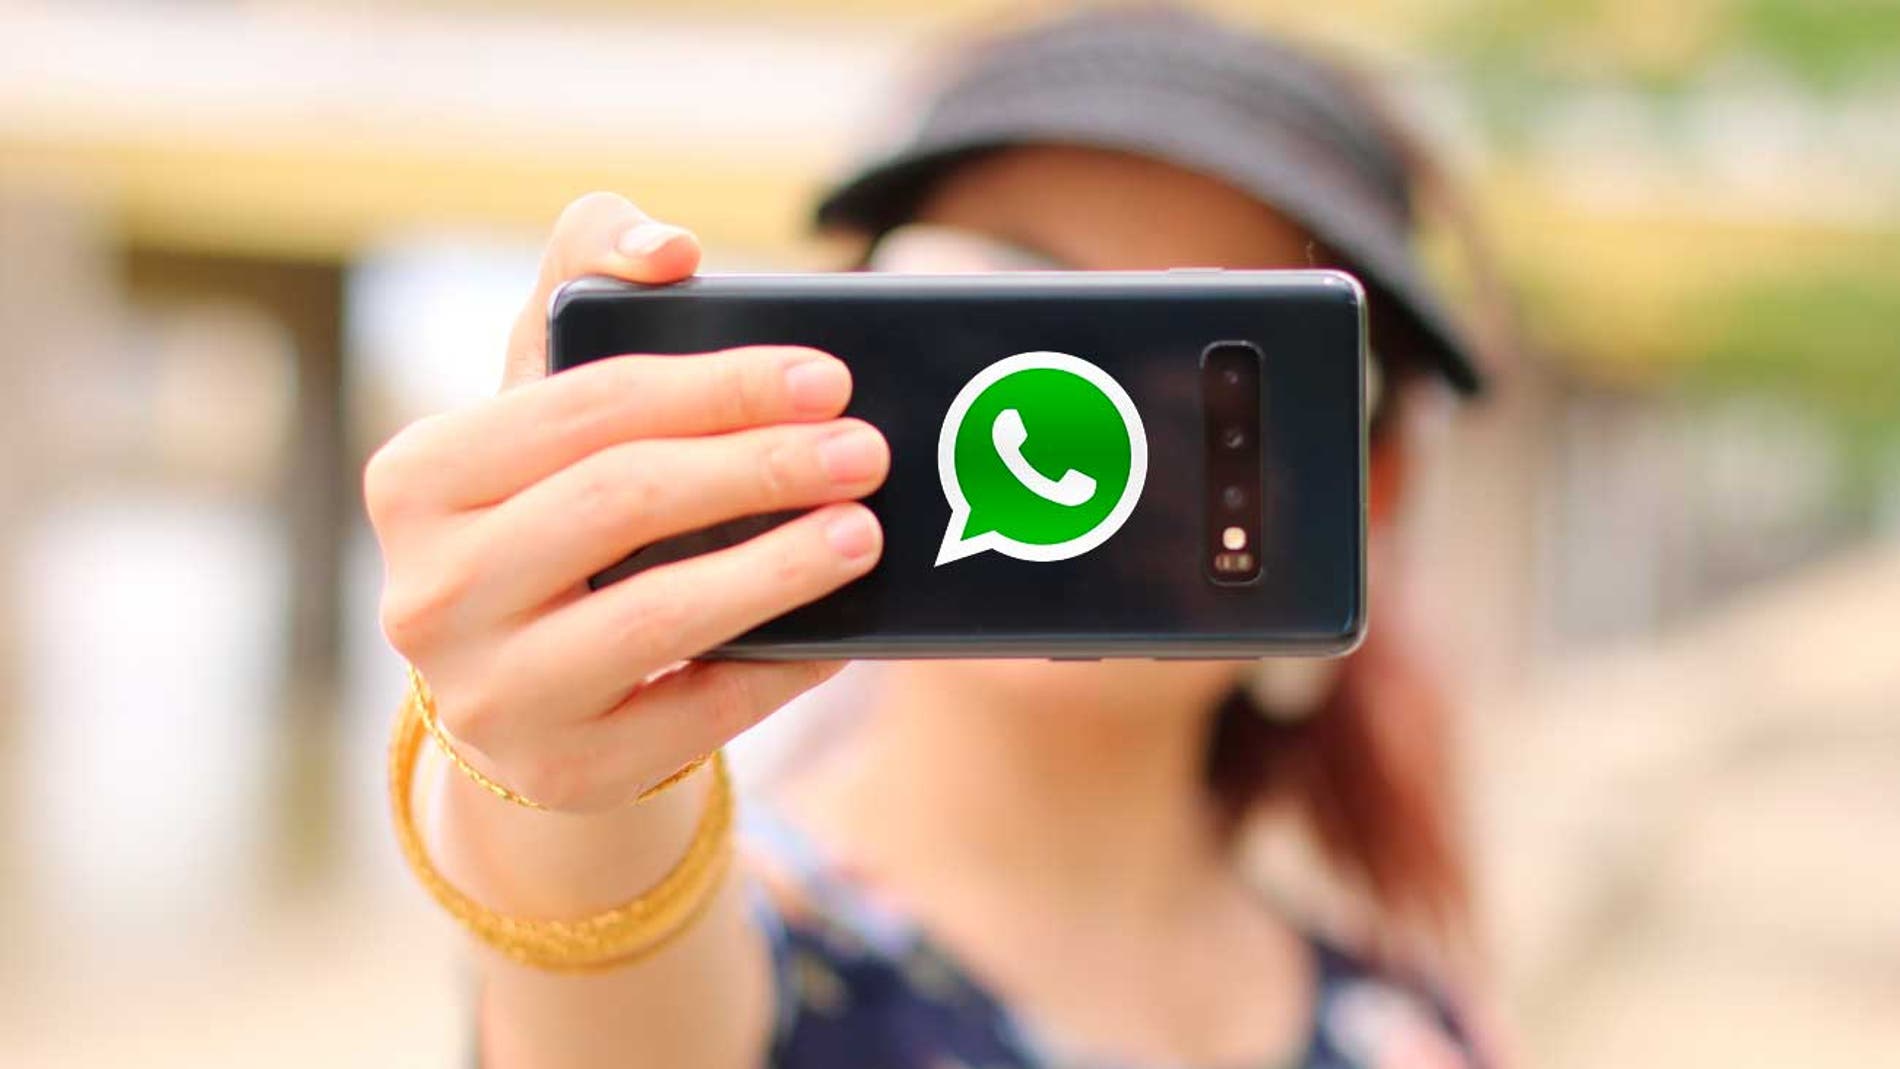 pasos reflujo arroz WhatsApp: el truco para activar la cámara selfie con un gesto